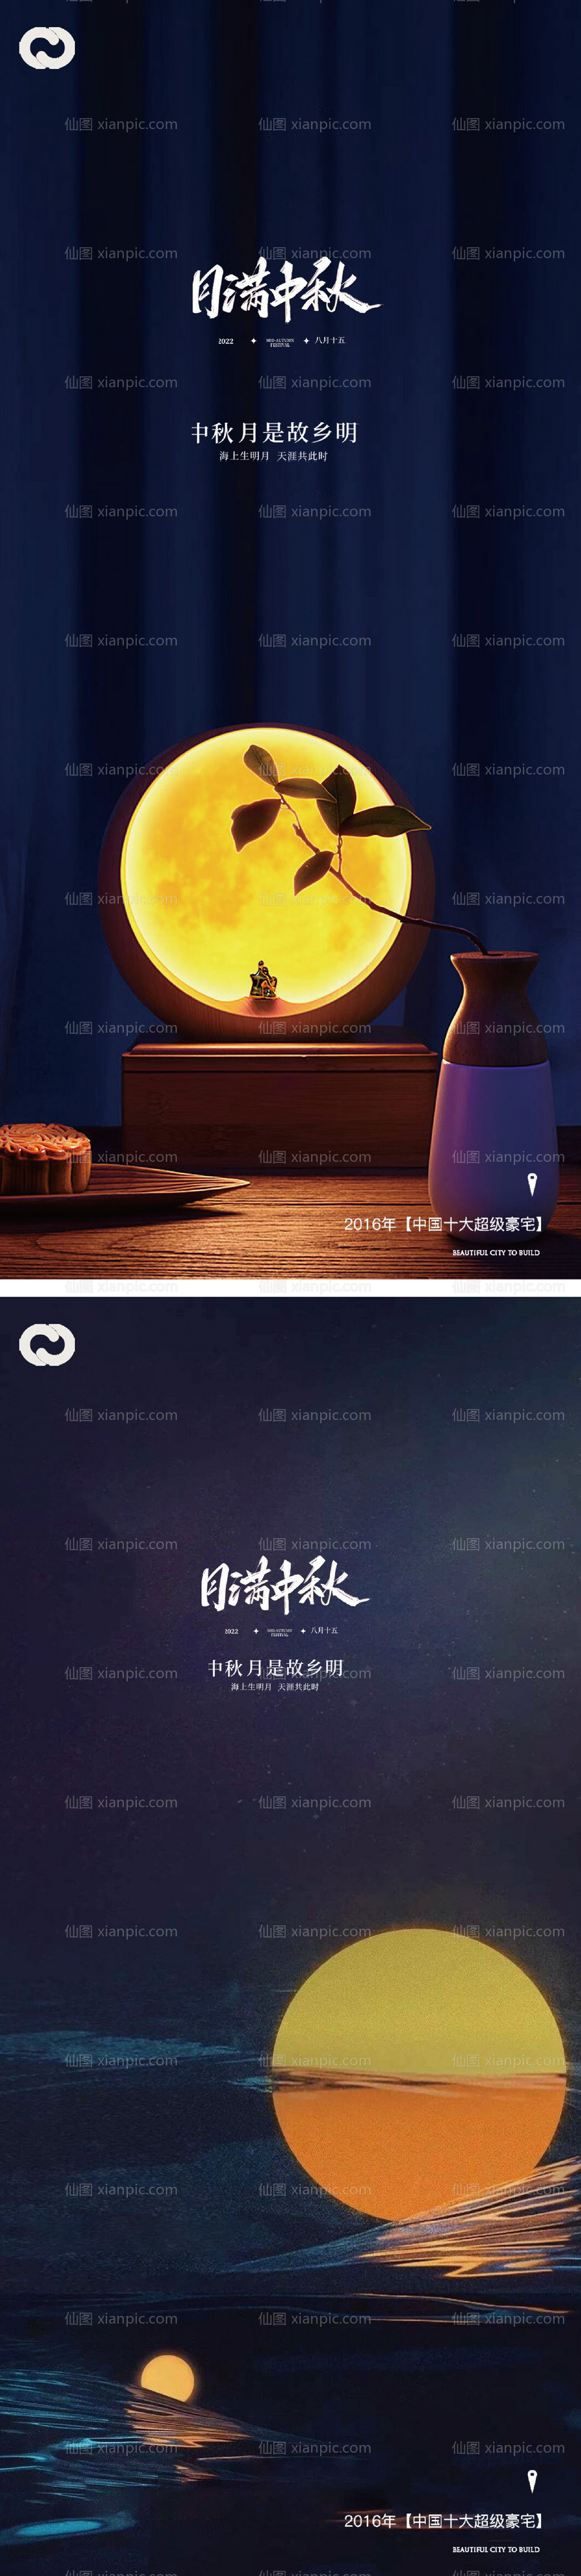 素材乐-中秋节系列团员海报